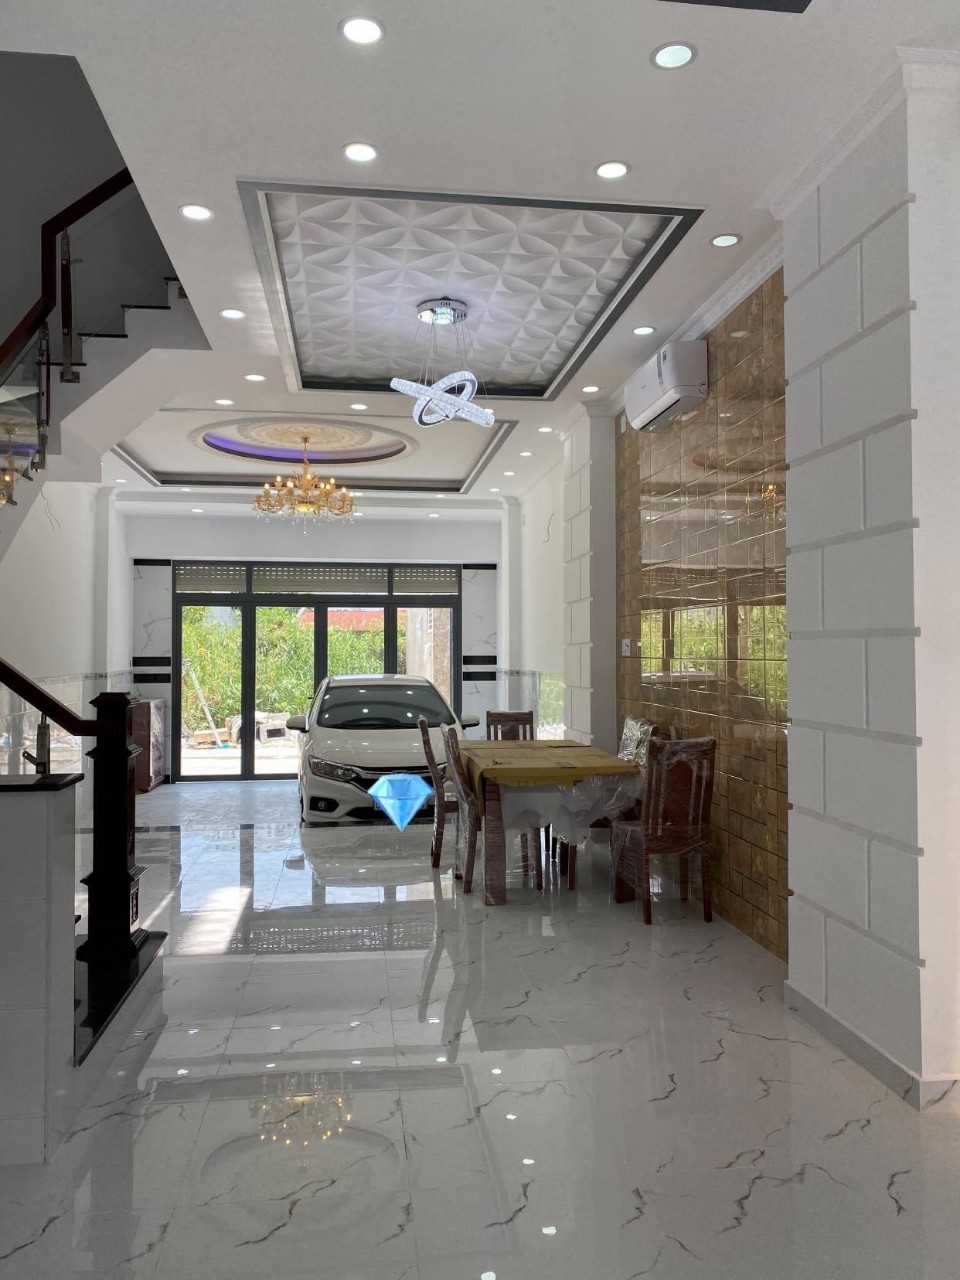 Bán nhà mặt tiền cư xá Nguyễn Trung Trực phường 12 quận 10, DT: 5.95x17.98m, 2 lầu, giá 14.5 tỷ, thích hợp mua ở